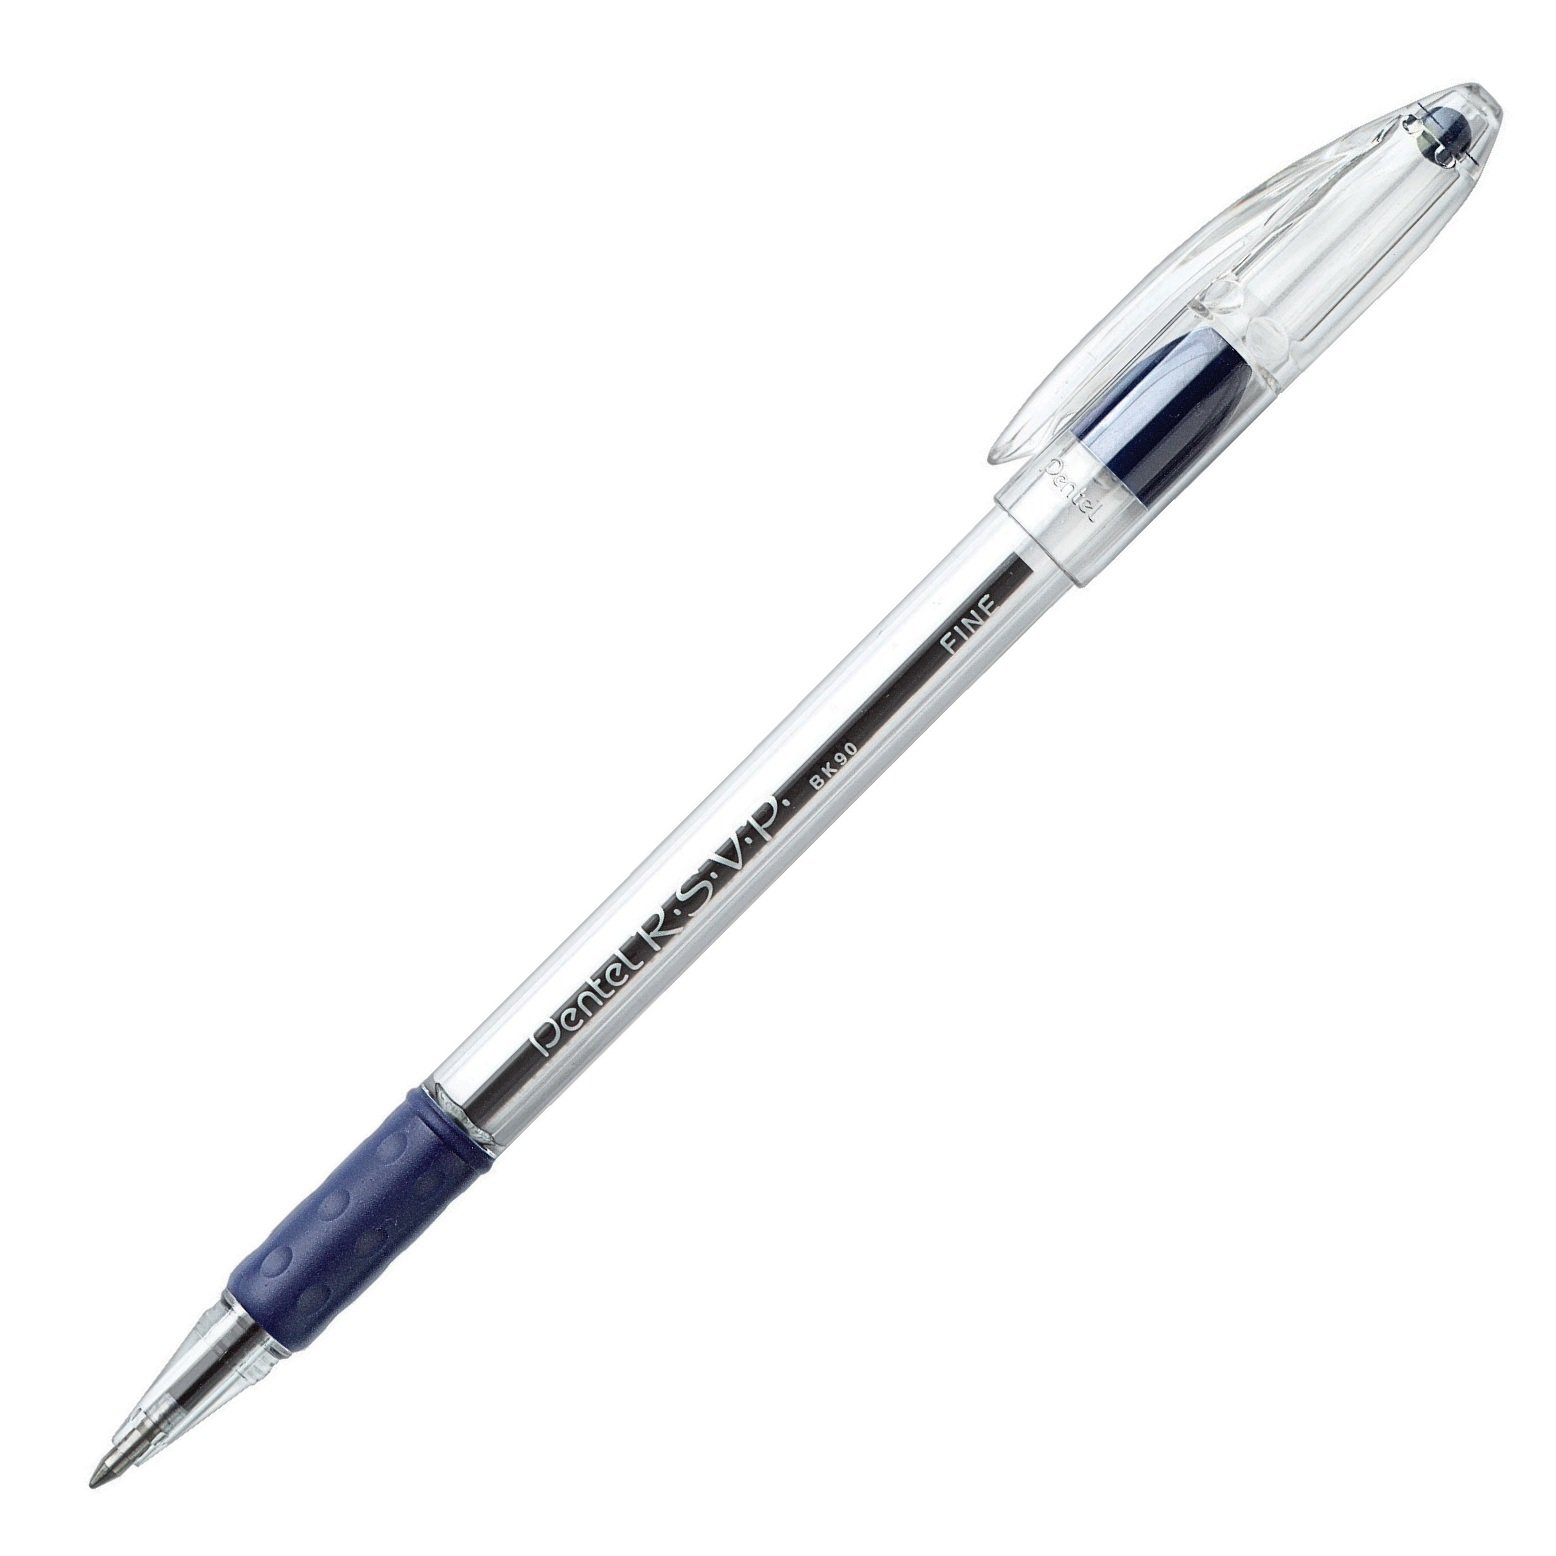 Bolígrafo Pentel r.s.v.p, punta 0.7 m    Bolígrafo Pentel r.s.v.p color azul, punta metálica 0.7 mm, punta de acero inoxidable, con agarre de caucho, diseño ergonómico, repuesto largo para mayor duración, barril robusto. grip y detalles en cuerpo que indica el color de la tinta                   color azul, 1 pieza                      - BK90-C